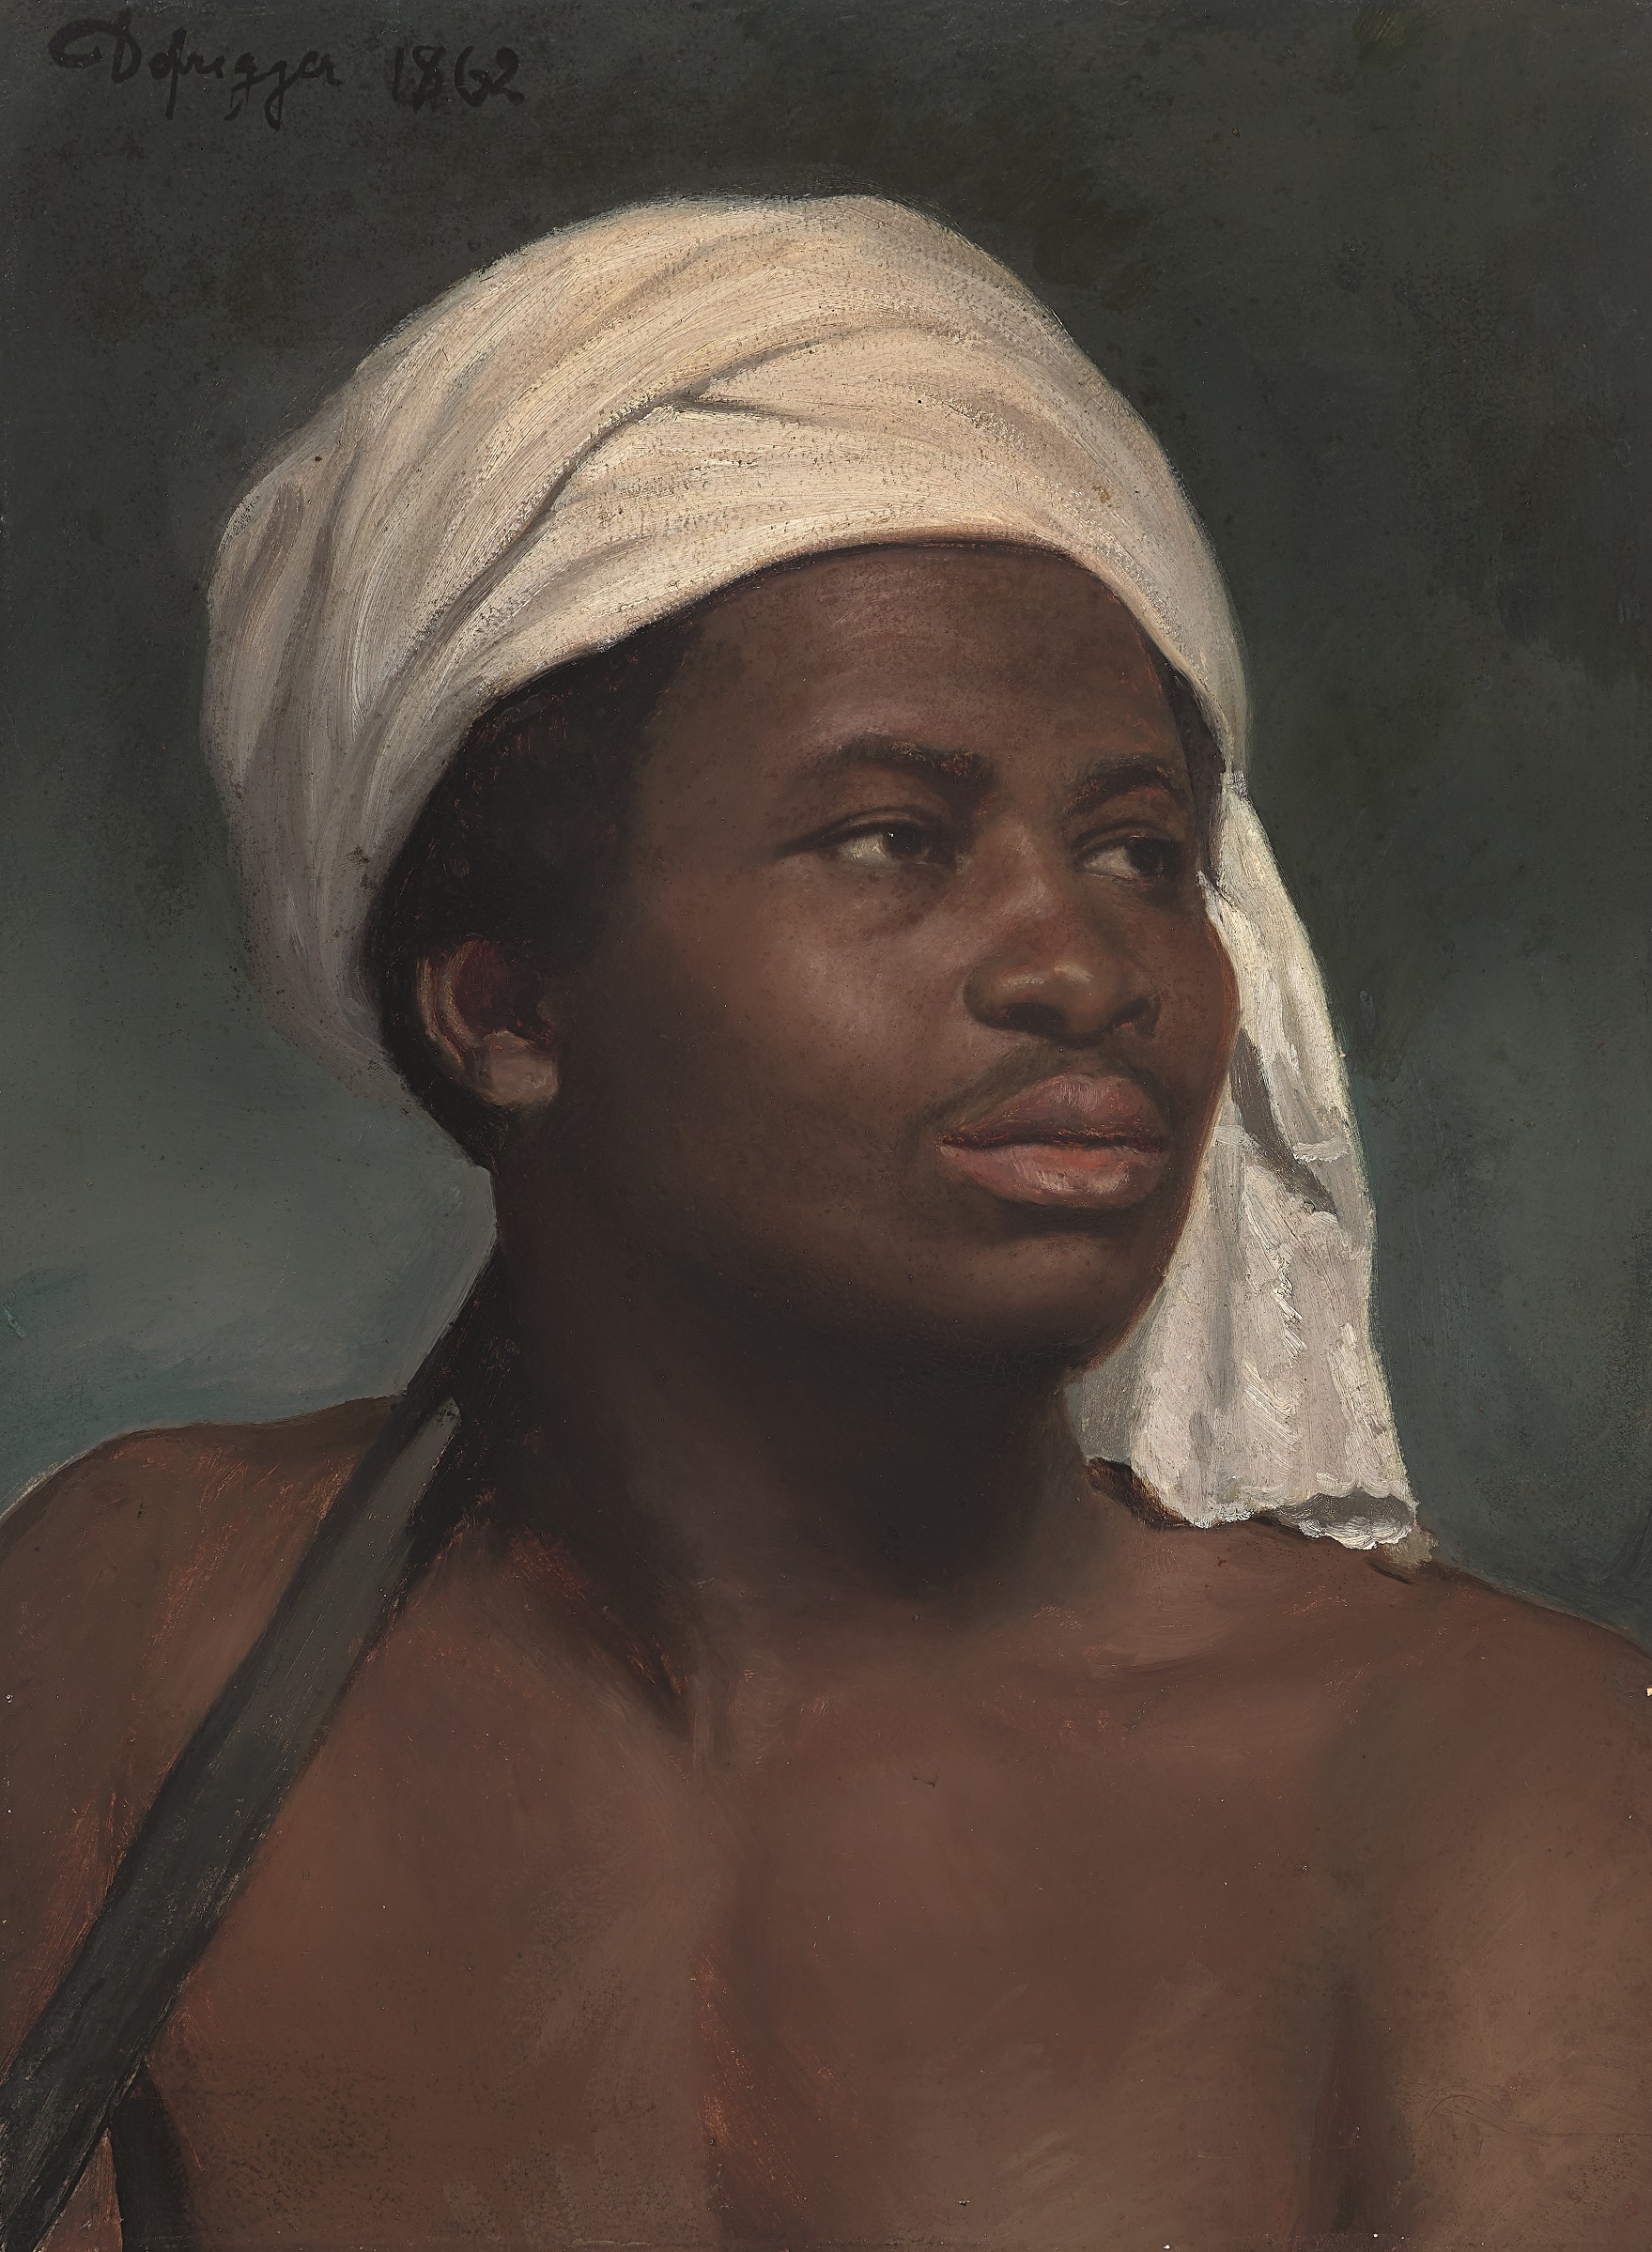 Franz von Defregger, Porträt eines Afrikaners mit weißem Kopftuch, 1862 Öl auf Papier, aufgezogen auf Karton, 53 x 39 cm, Privatbesitz © Tiroler Landesmuseen